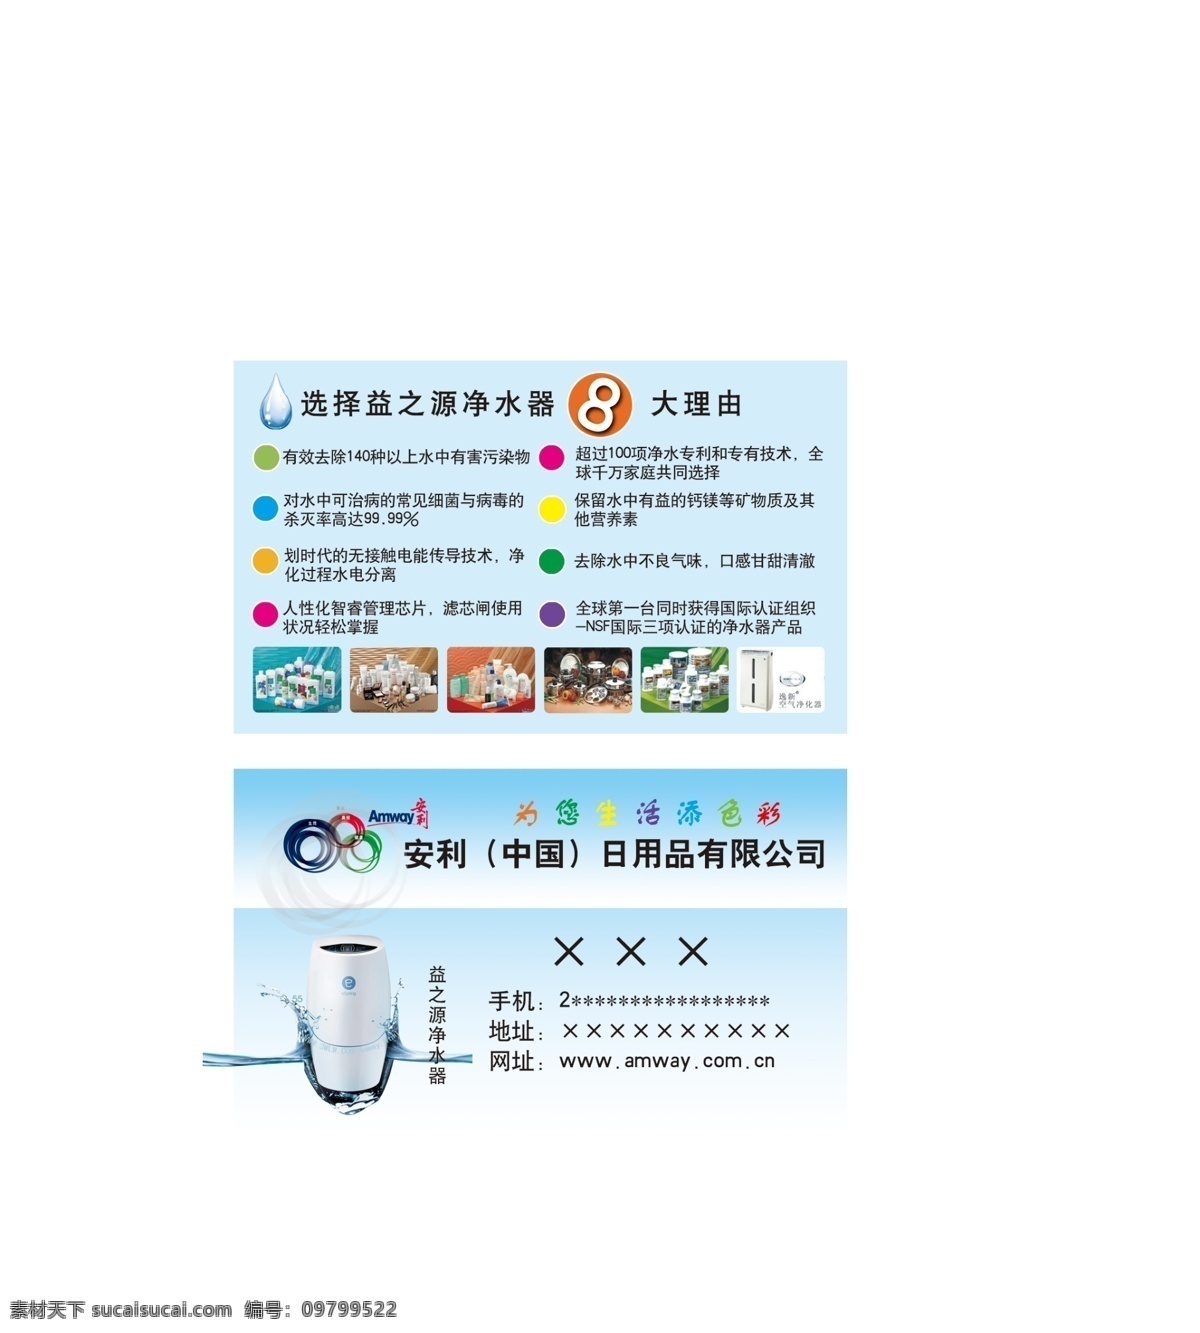 安利标志 安利名片 产品 广告设计模板 介绍 名片卡片 企业名片 数字 安利 名片 模板下载 名称 水滴 源文件 psd源文件